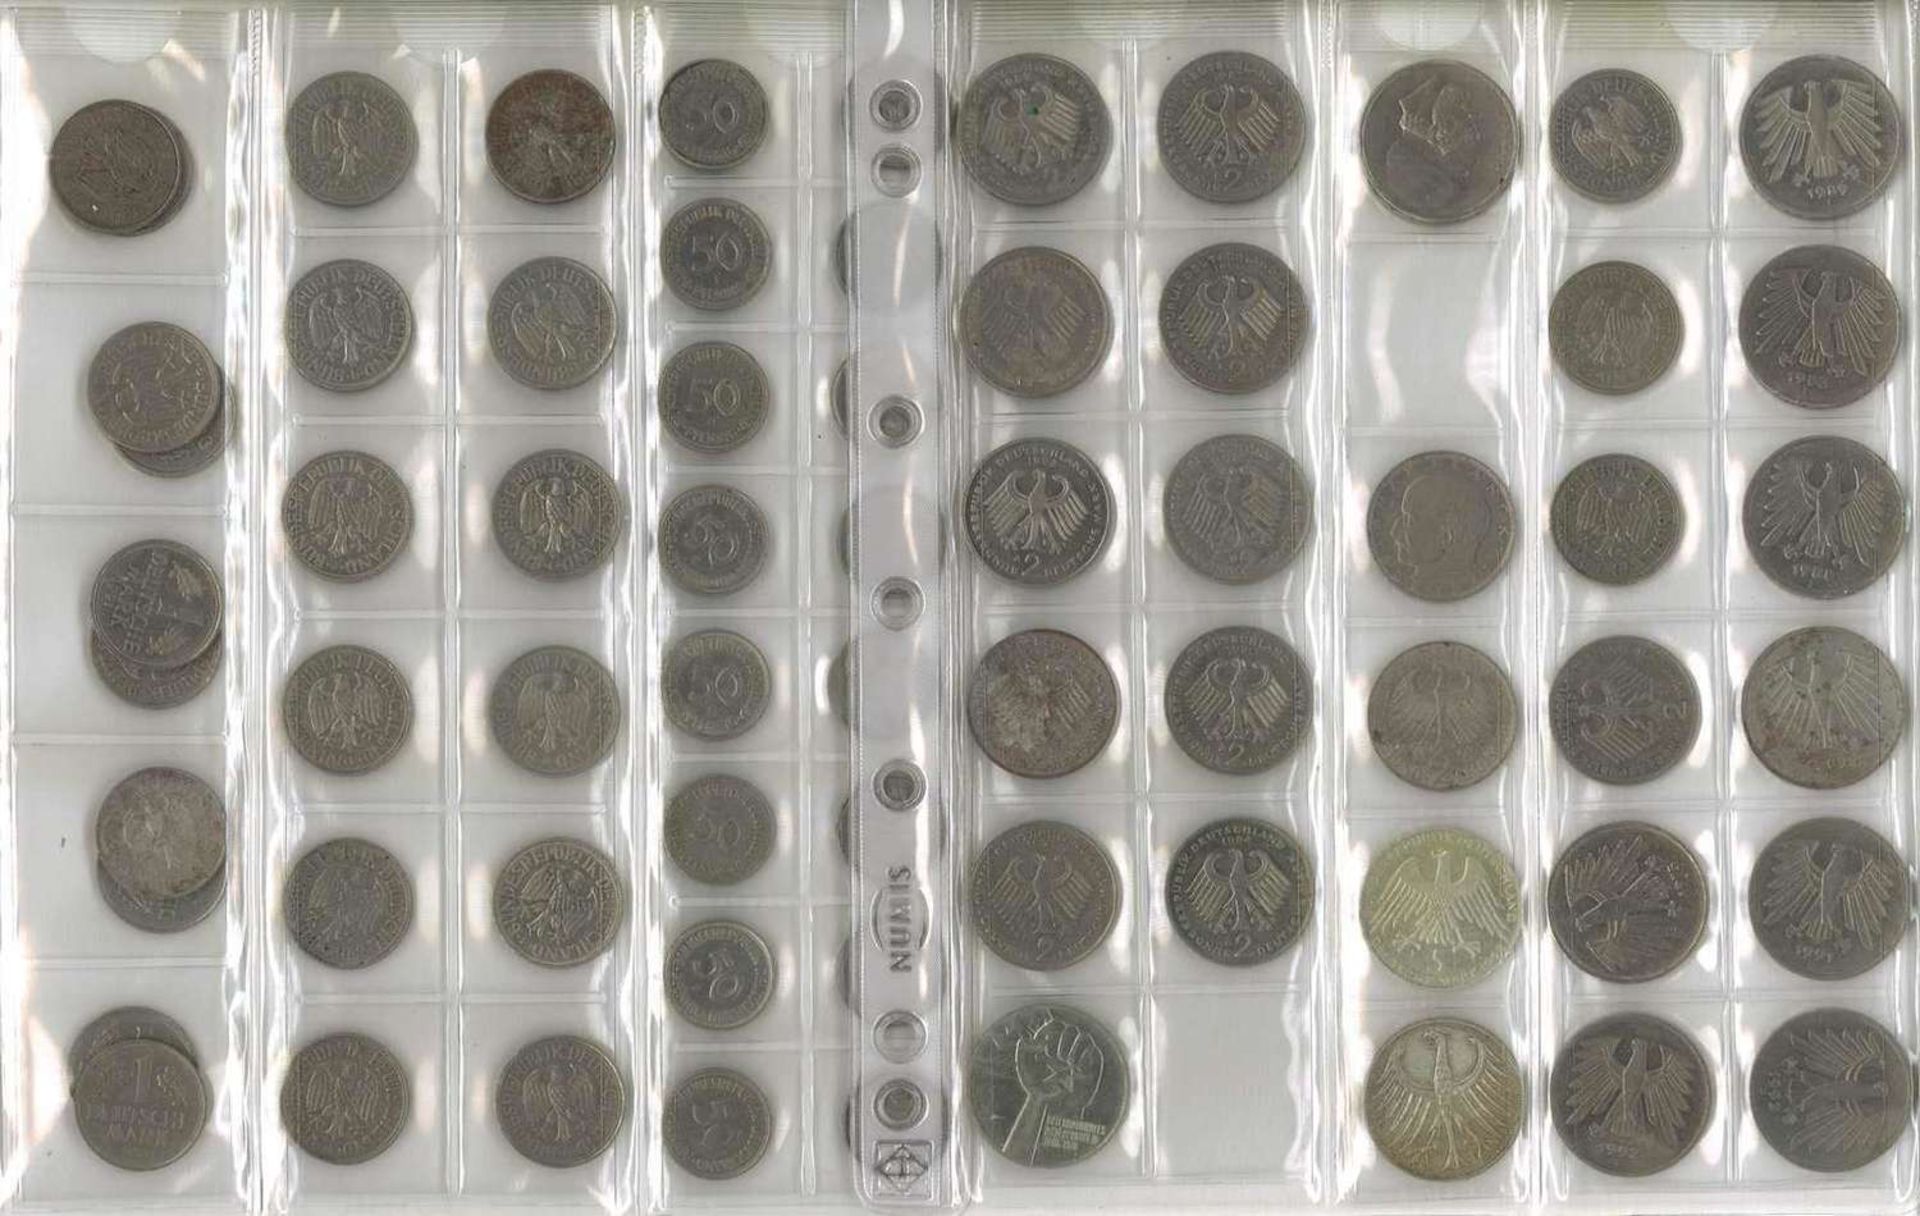 Lot Münzen, meist BRD, dabei 7x 10 Mark, 25x 5 Mark, 13x 2 Mark, 35x 1 Mark, 37x 50 Pfennig. Nomin - Bild 4 aus 6